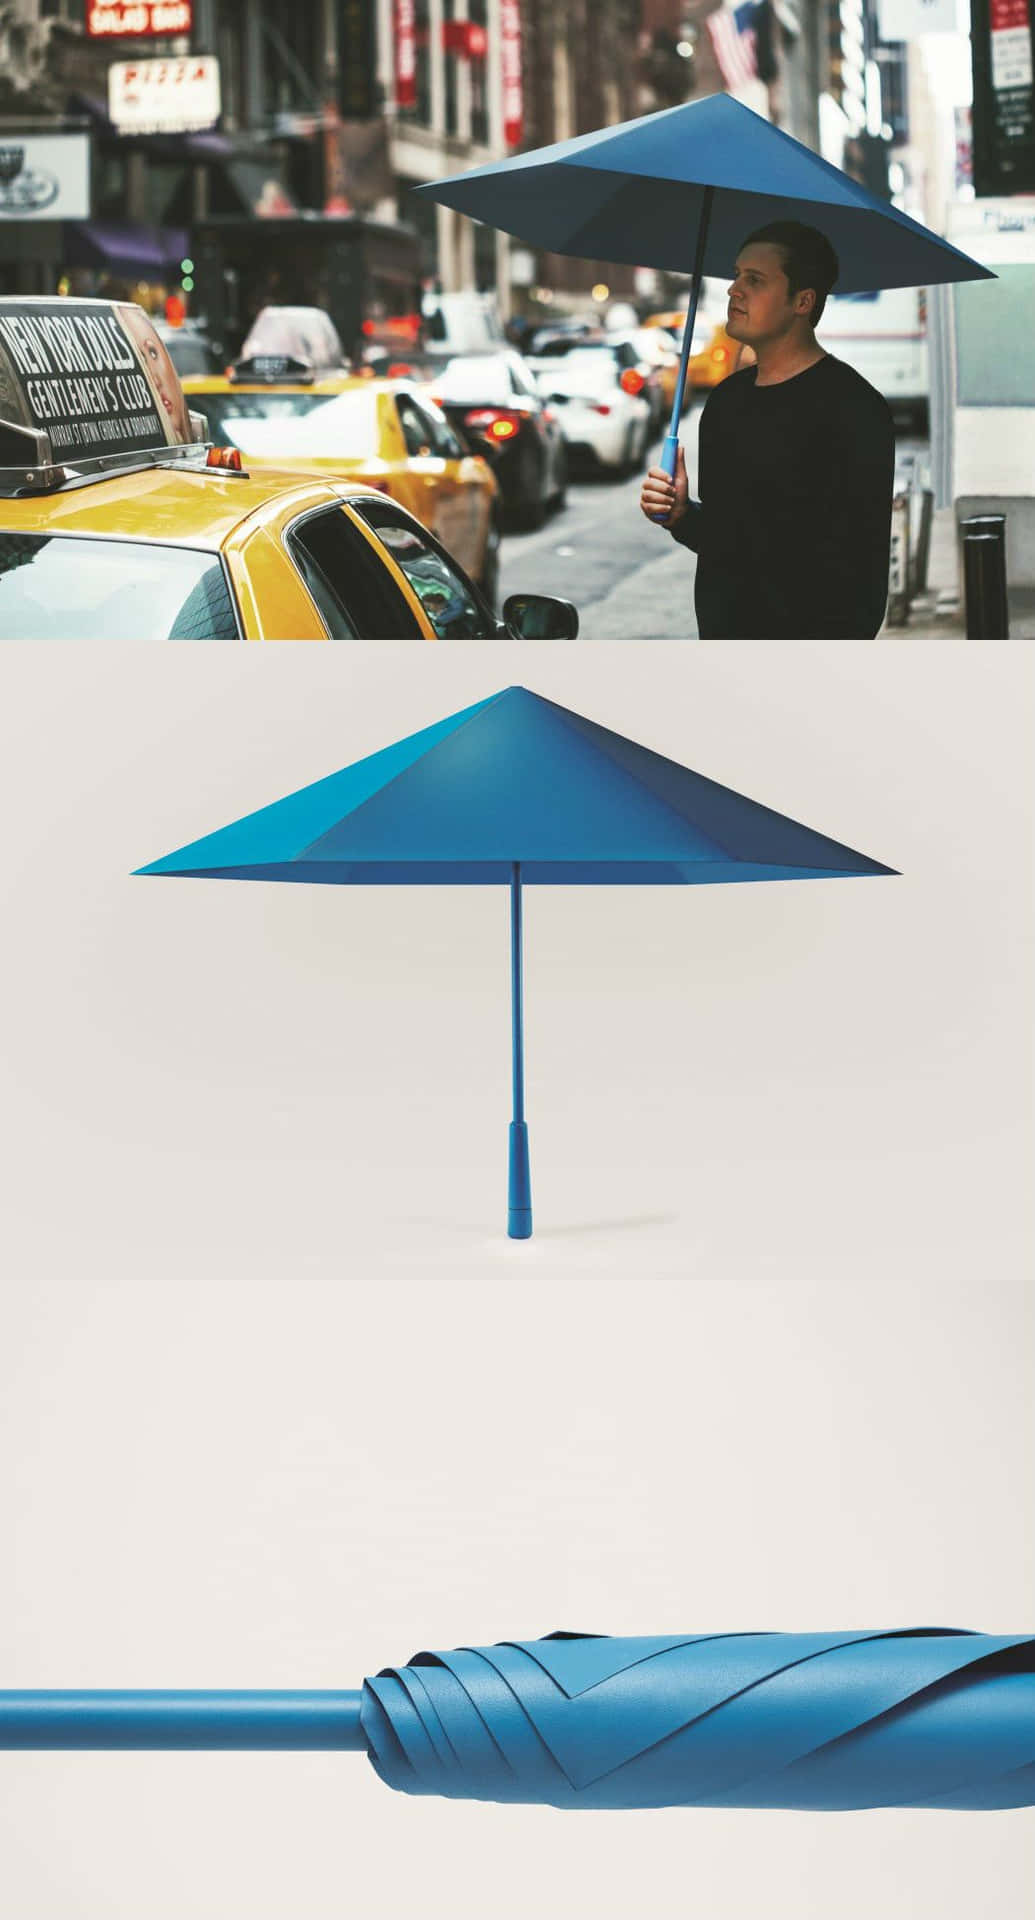 Ettblått Paraply Hålls Upp Av En Man.